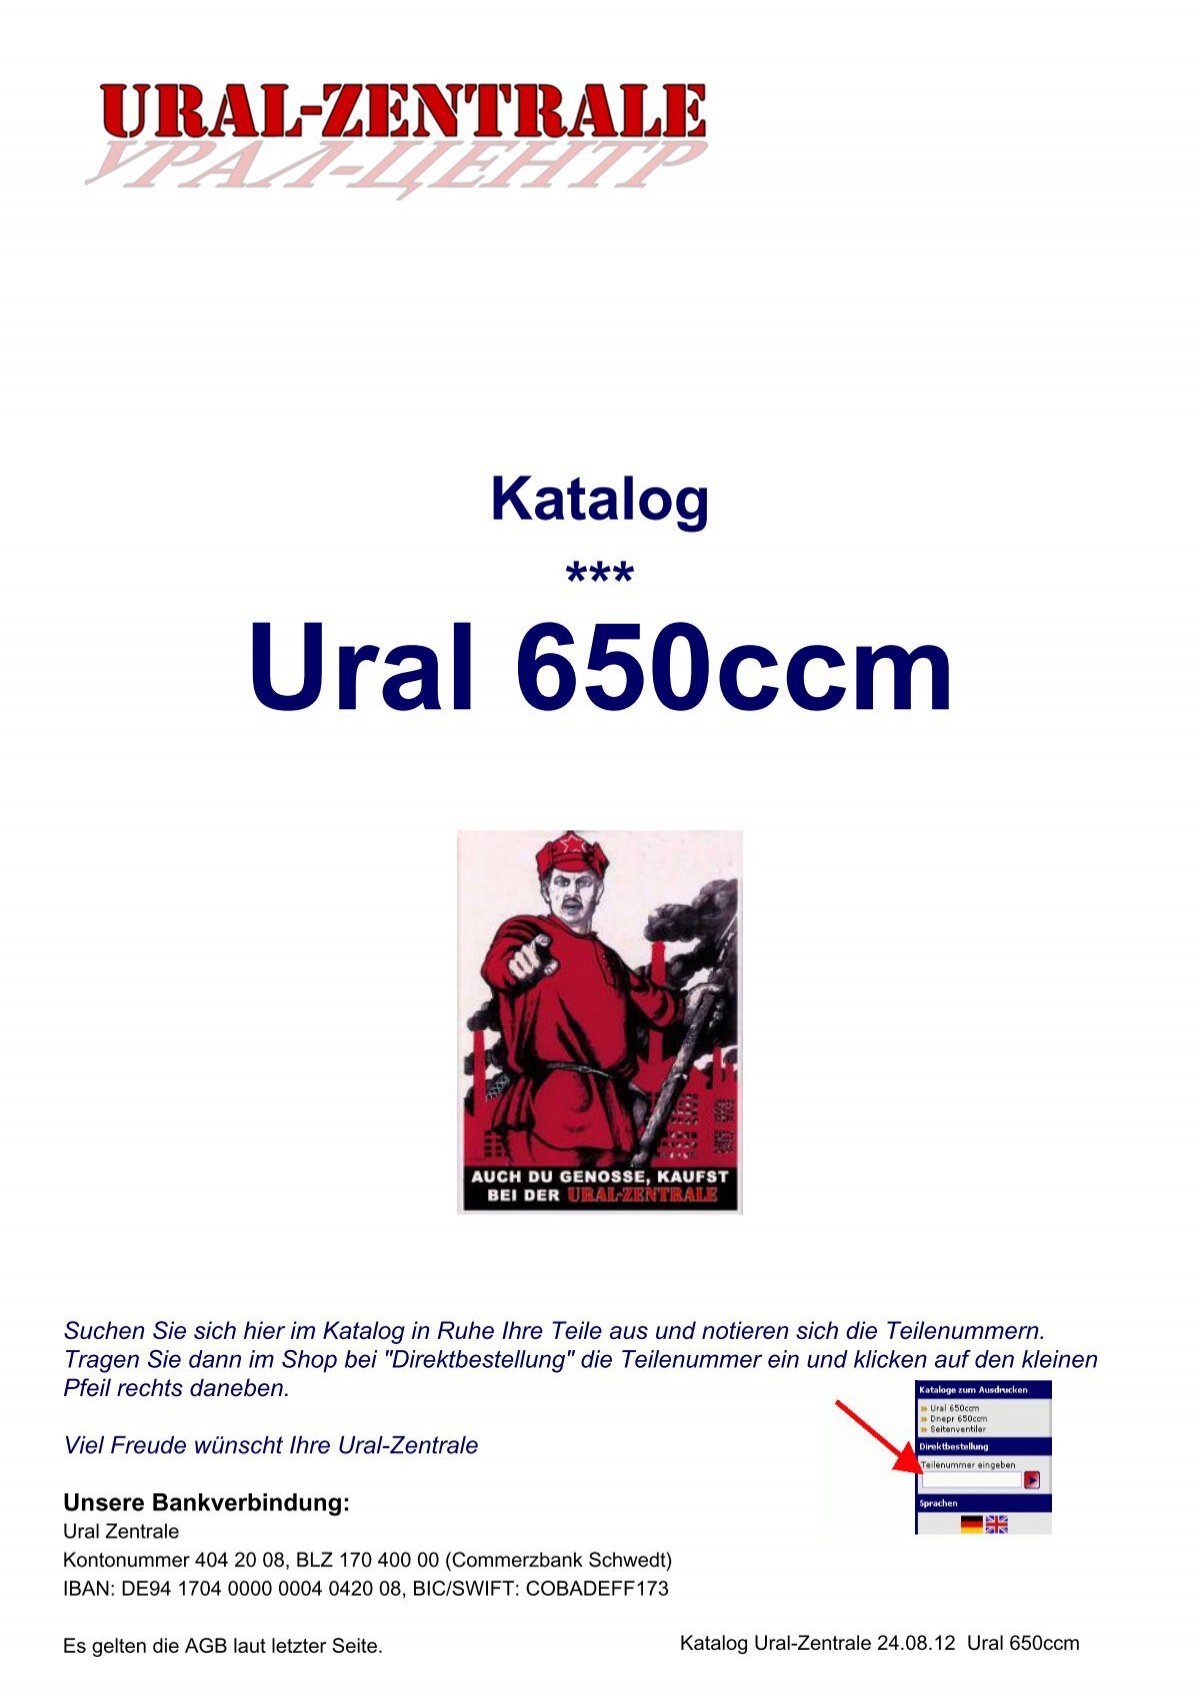 Katalog *** Ural 650ccm - Ural-Zentrale